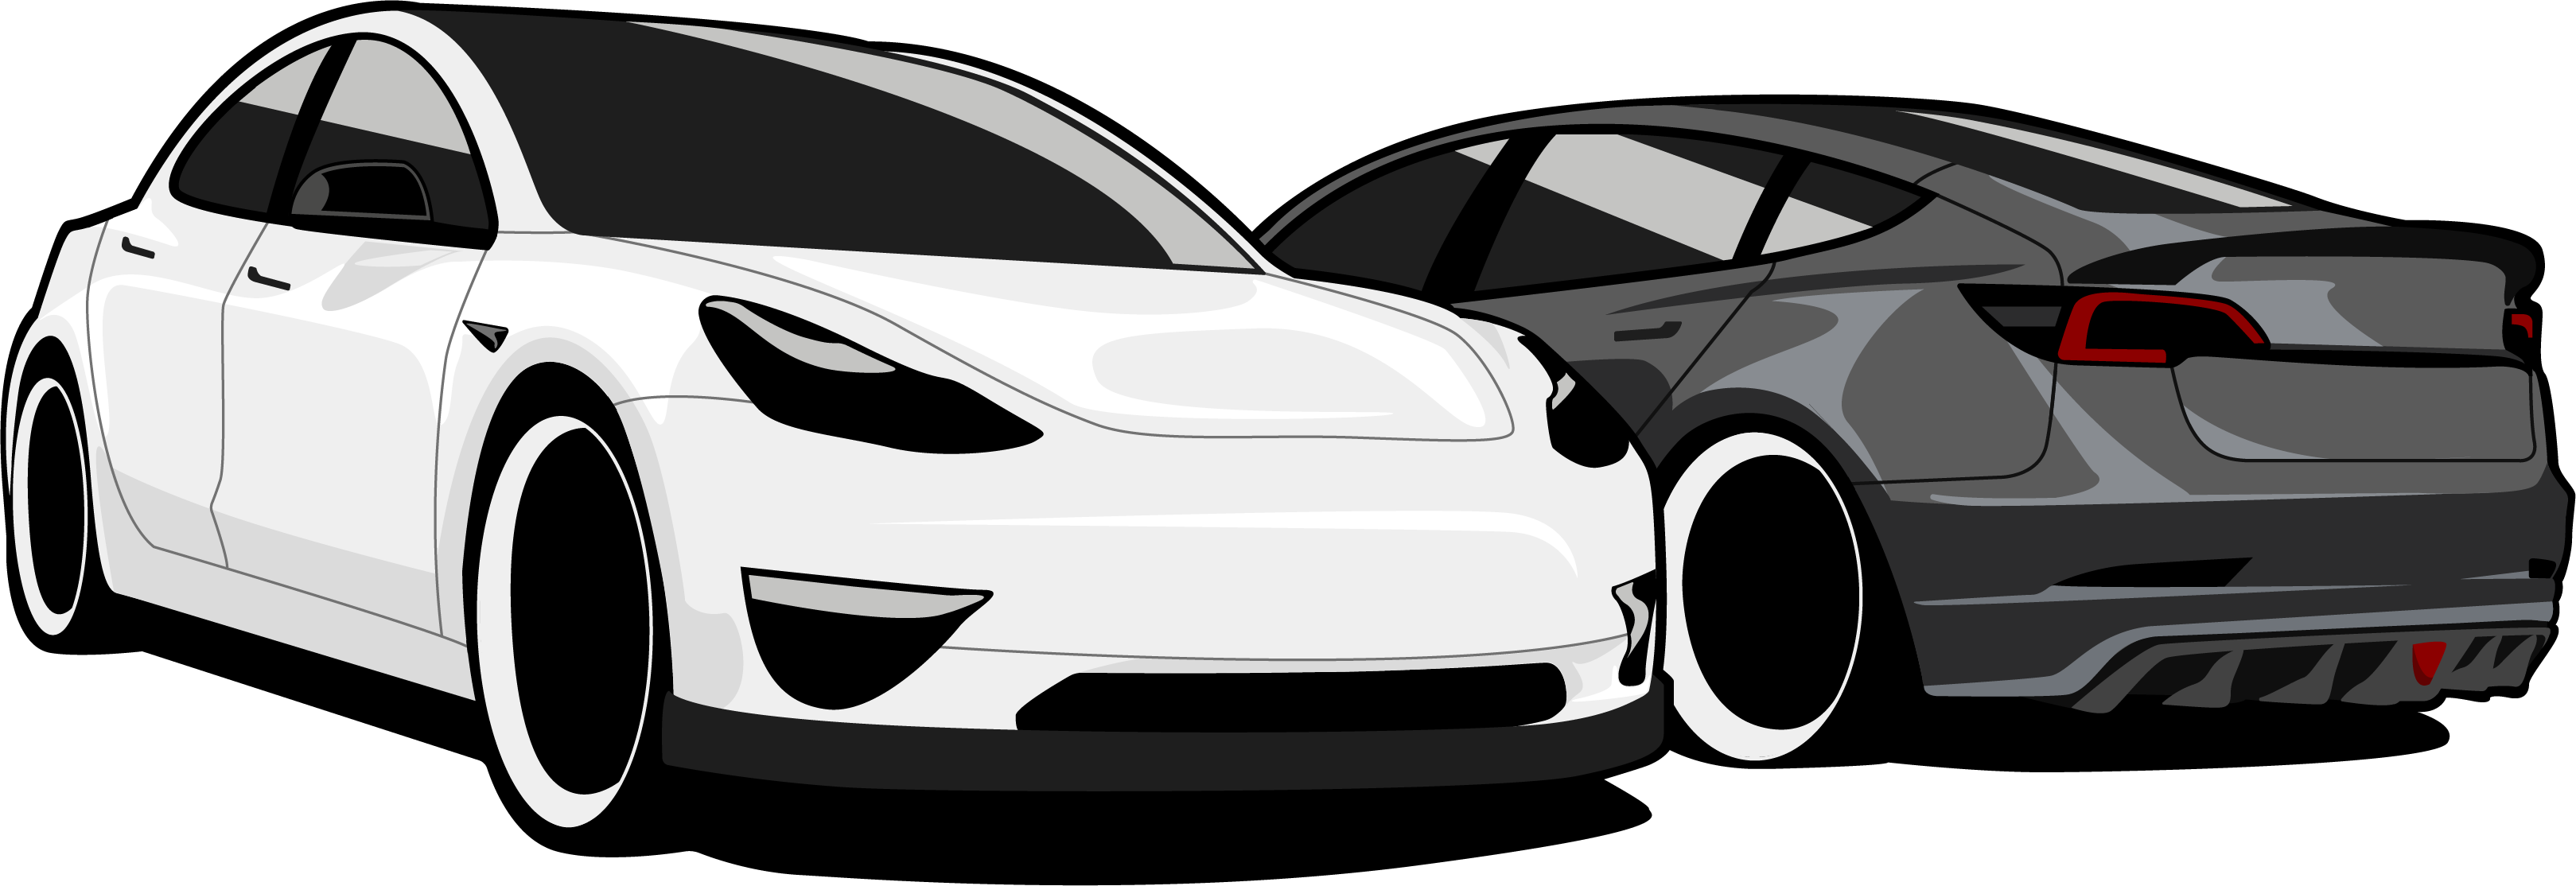 Accessoires pour la Tesla Model 3 ?